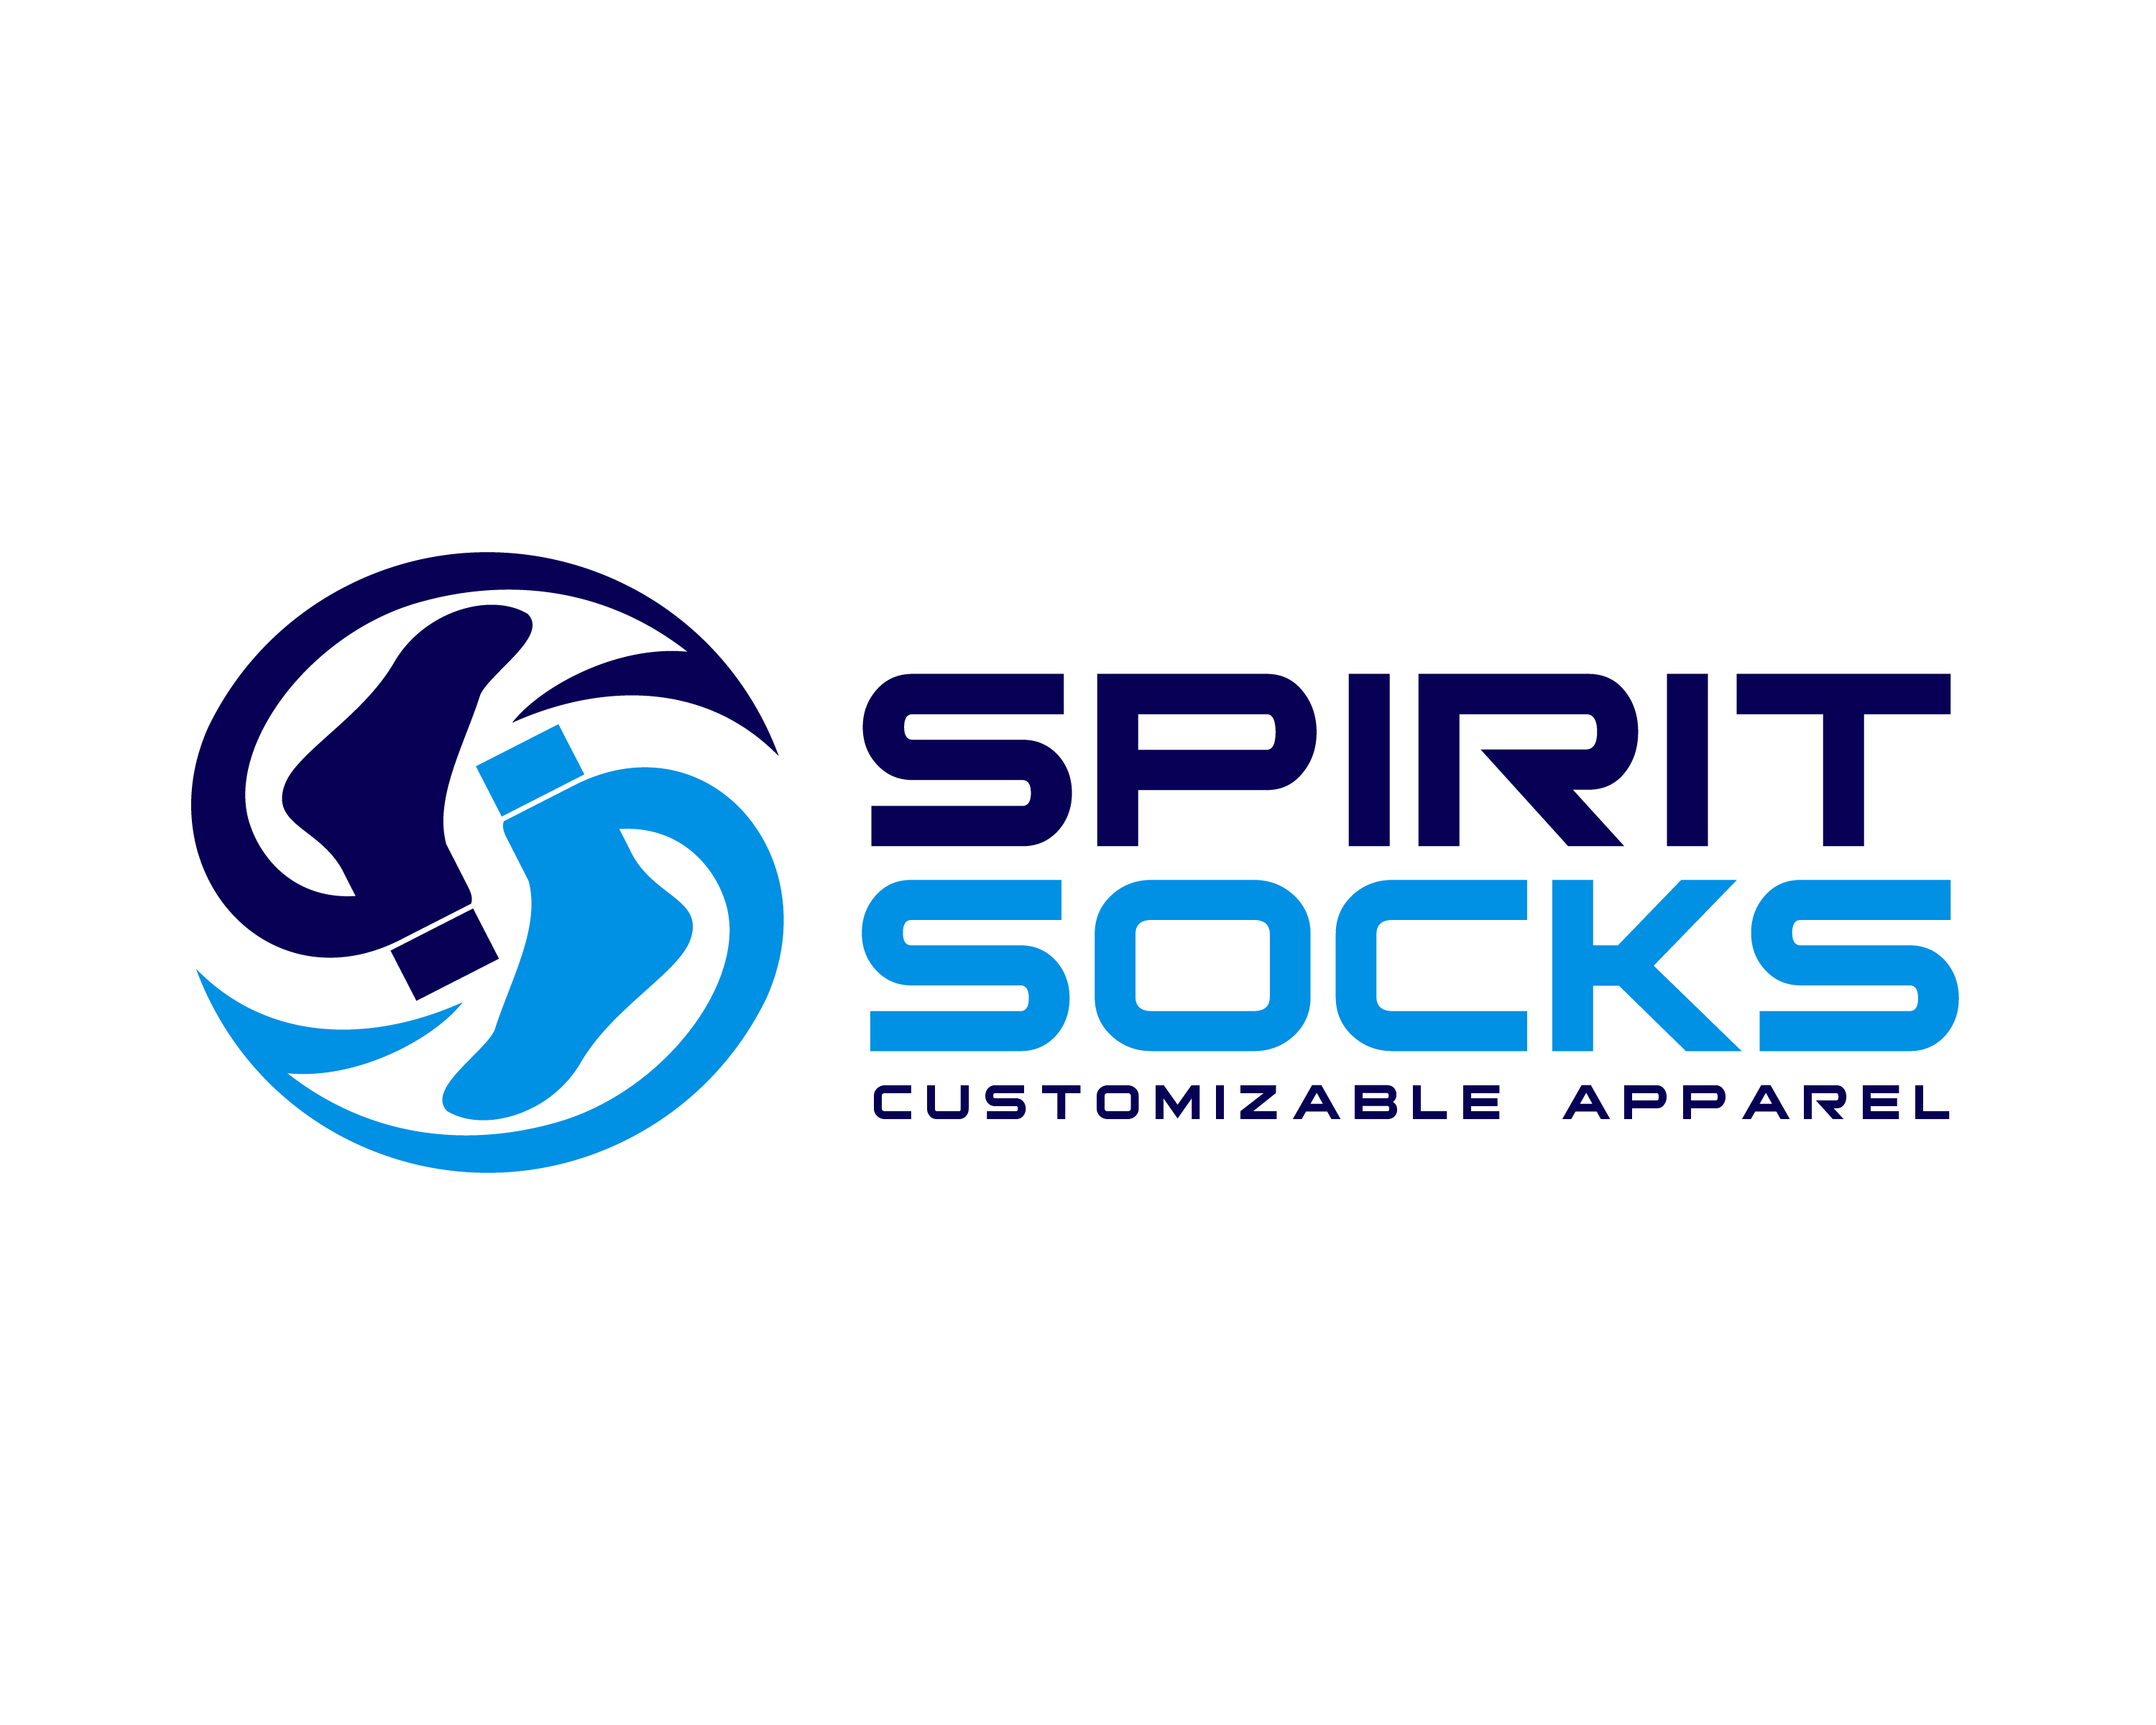 Socks Company Logo